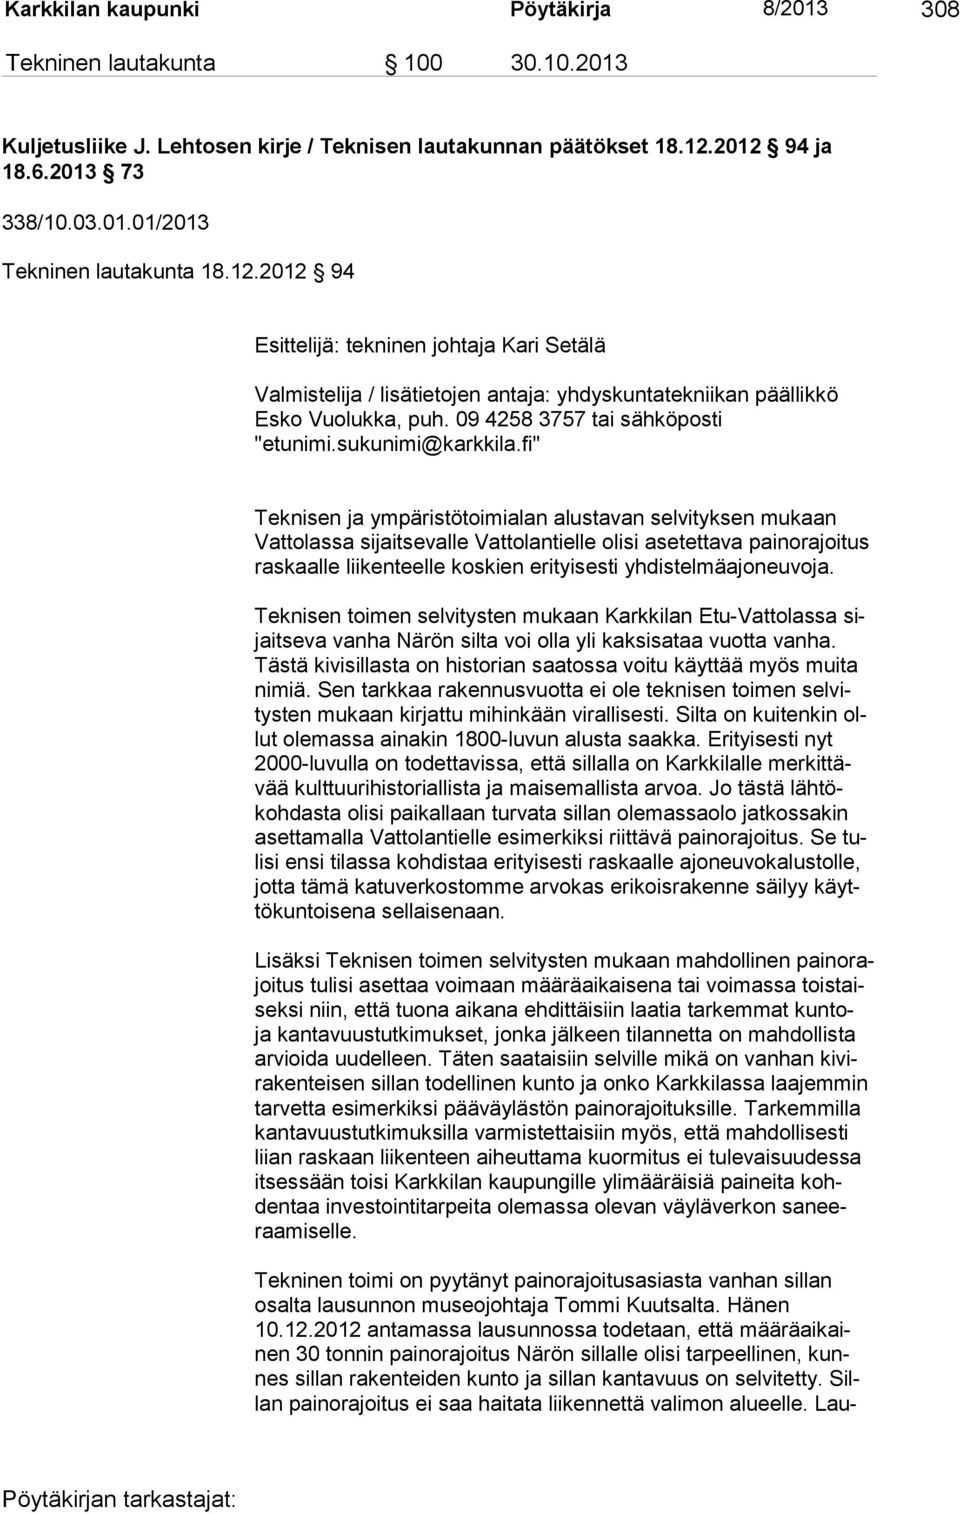 fi" Teknisen ja ympäristötoimialan alustavan selvityksen mukaan Vattolassa sijaitsevalle Vattolantielle olisi asetettava painorajoitus raskaalle liikenteelle koskien erityisesti yhdistelmäajoneuvoja.